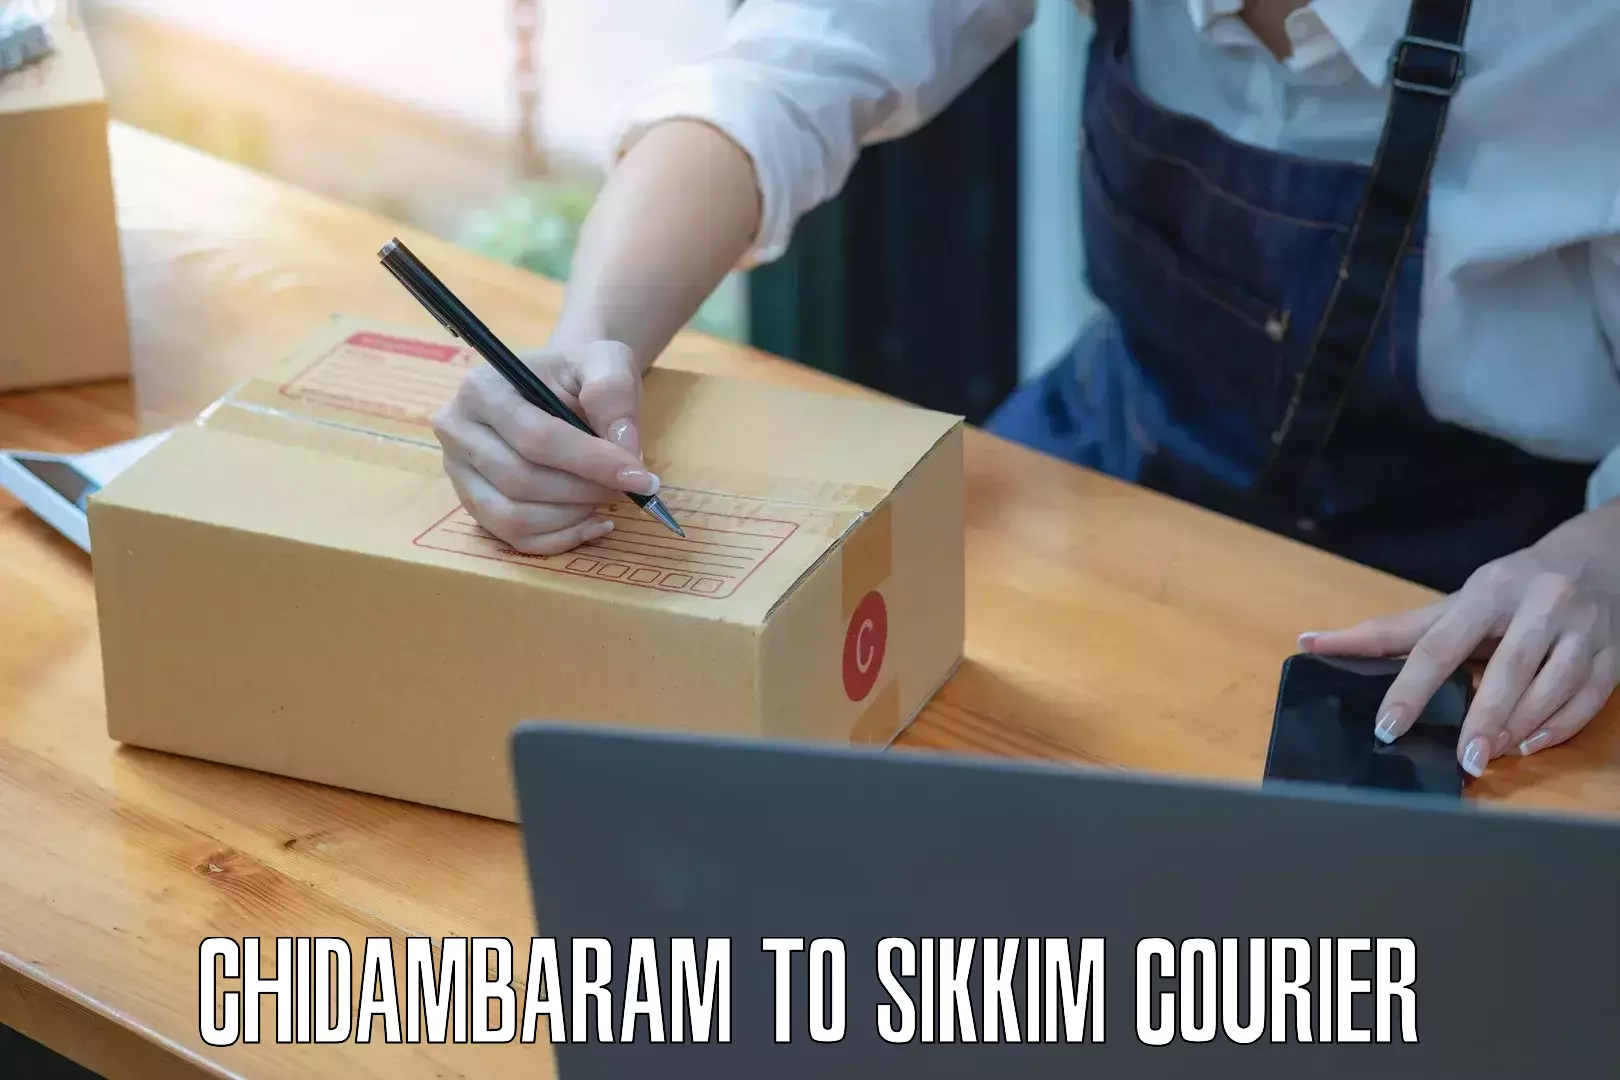 Professional courier handling Chidambaram to Sikkim